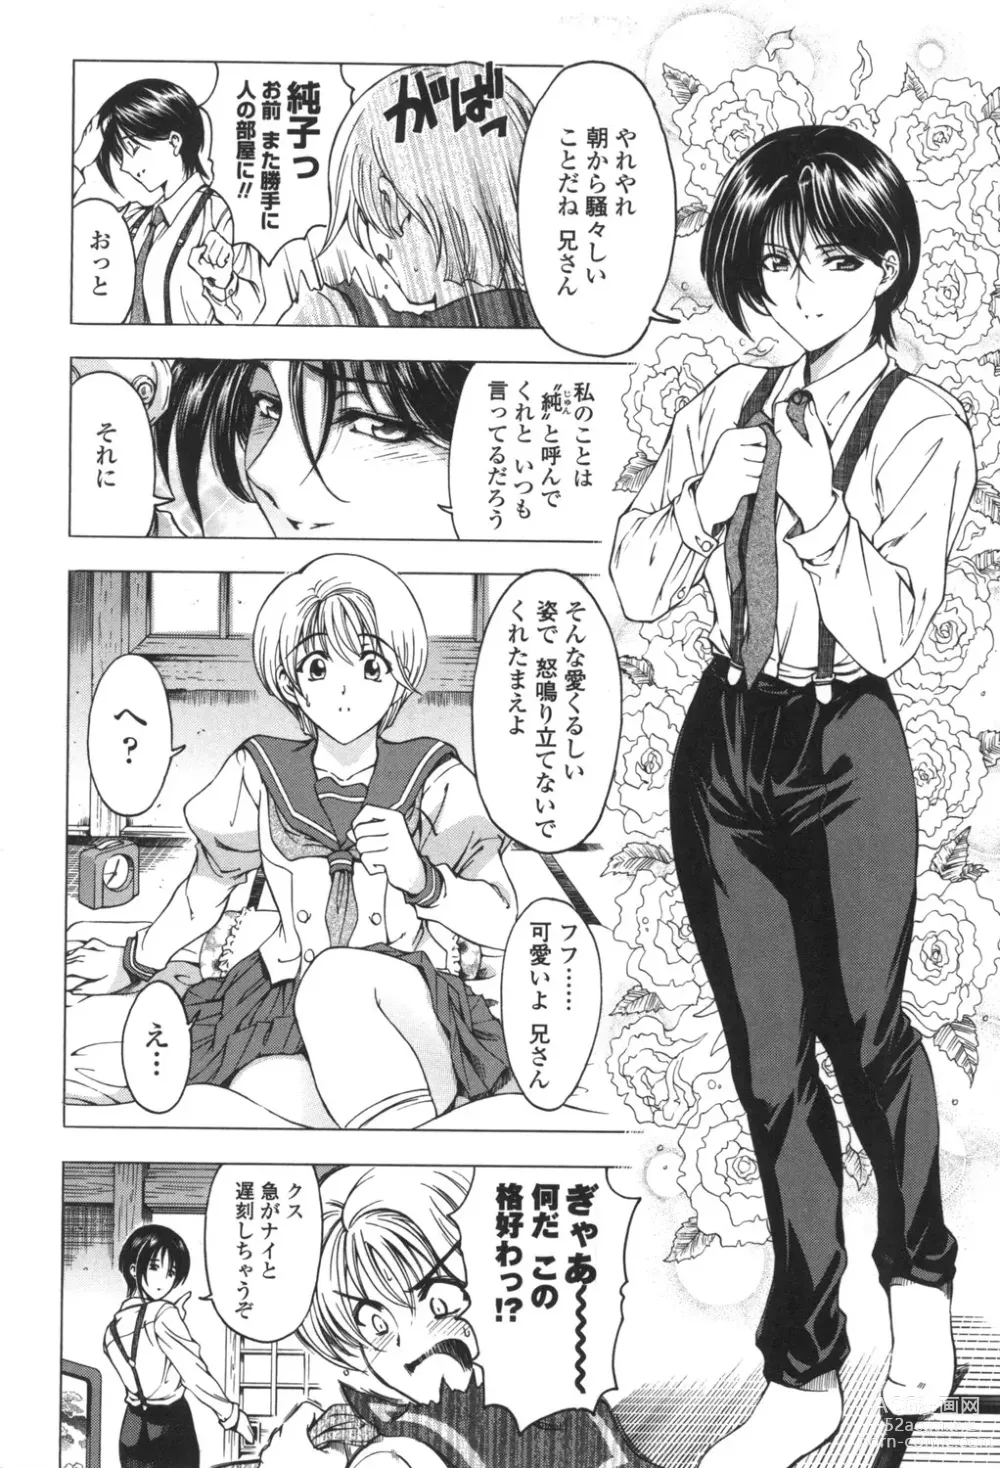 Page 8 of manga Maruimo!?